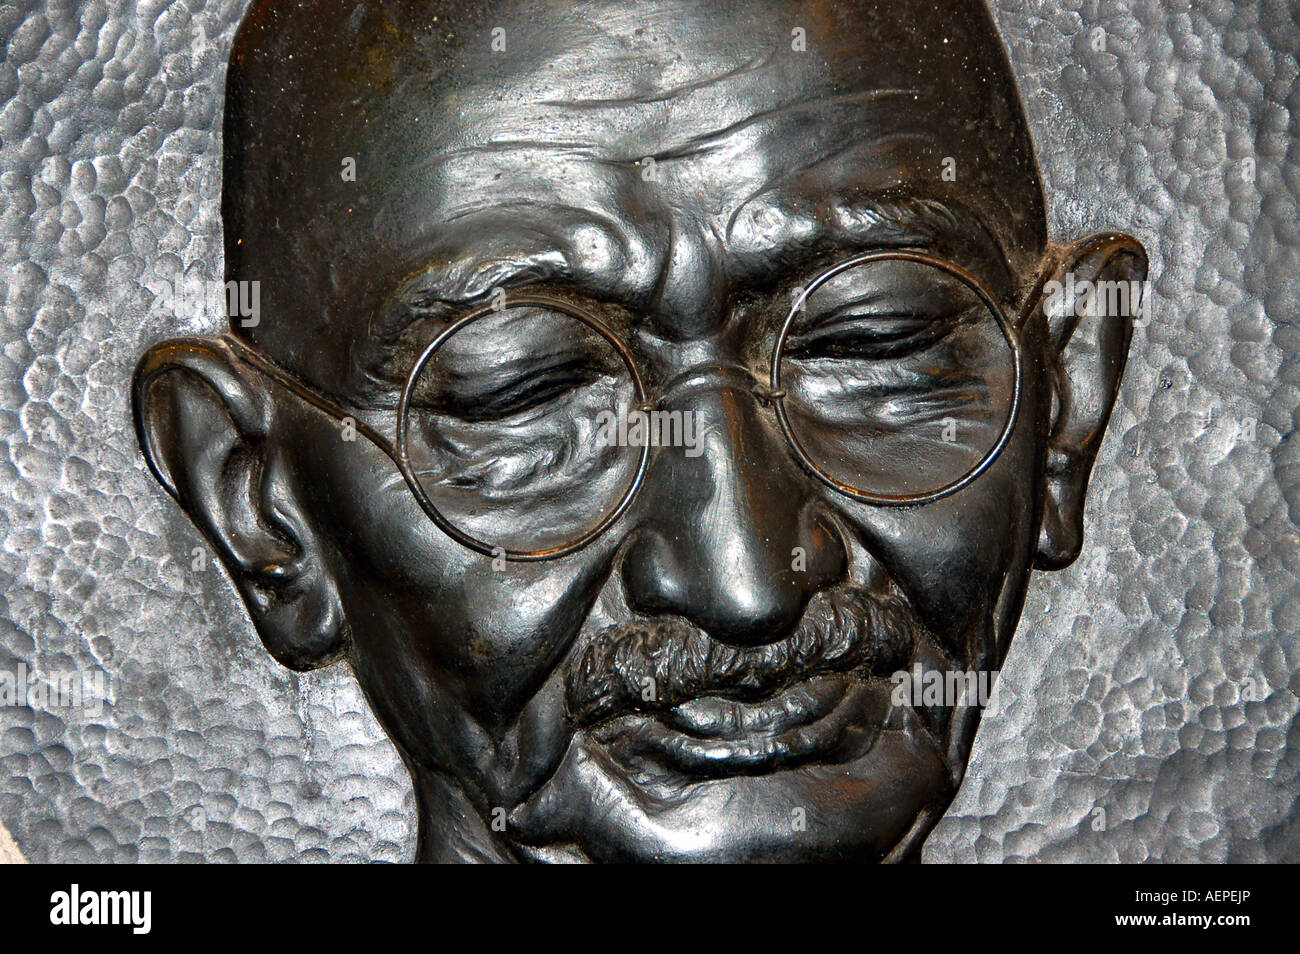 Imagen de fundición de bronce de Mahatma Gandhi en su casa, Mani Bhavan, Mumbai, India Foto de stock